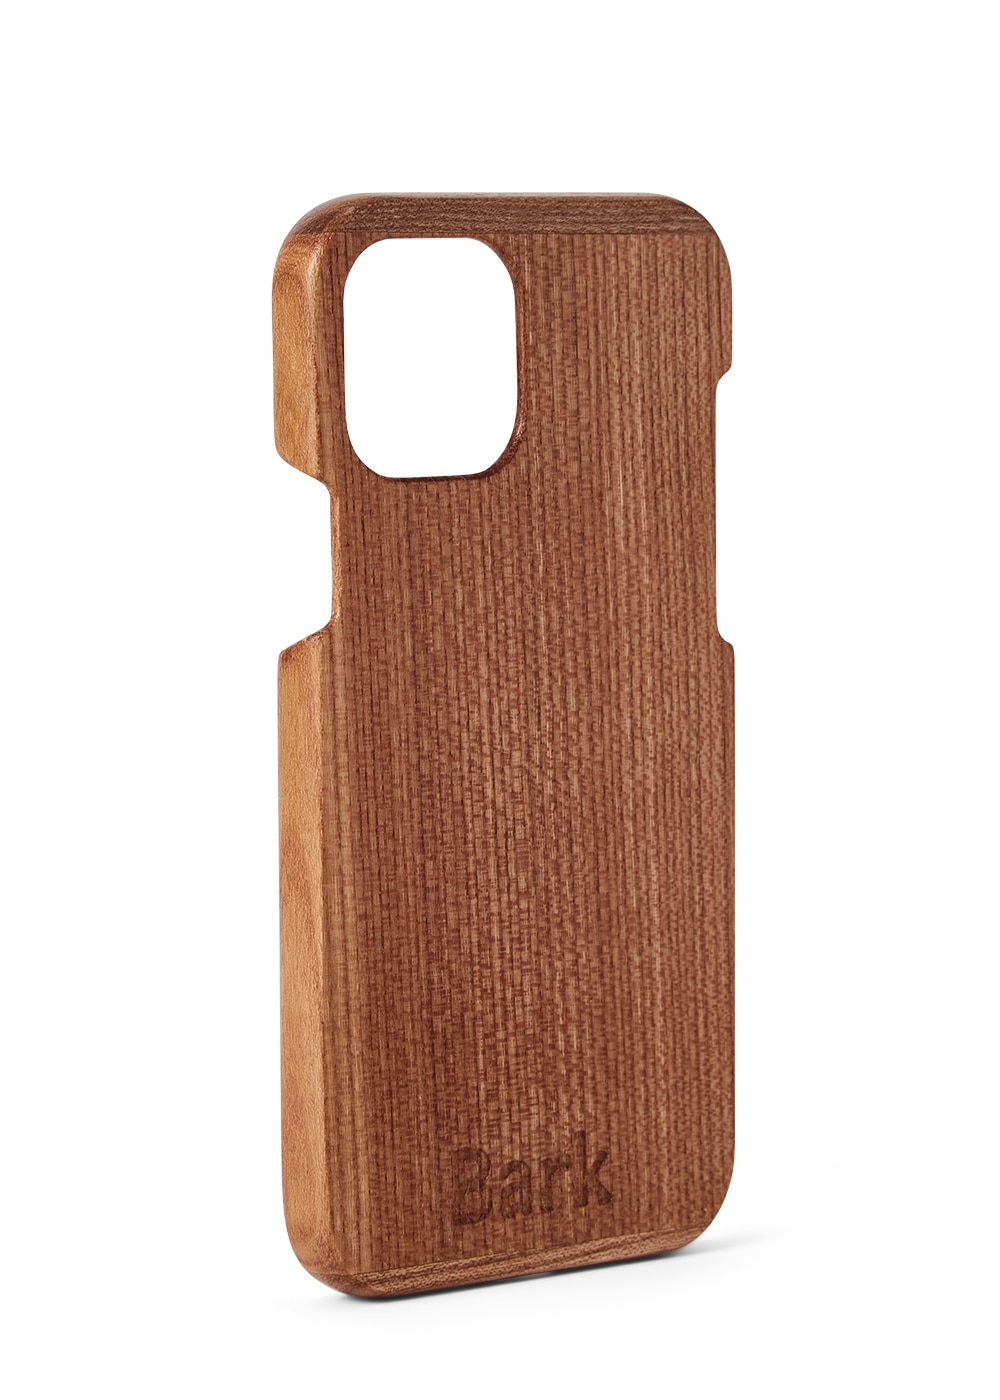 iPhone 12 Pro case made of Swedish hardwood - Alm